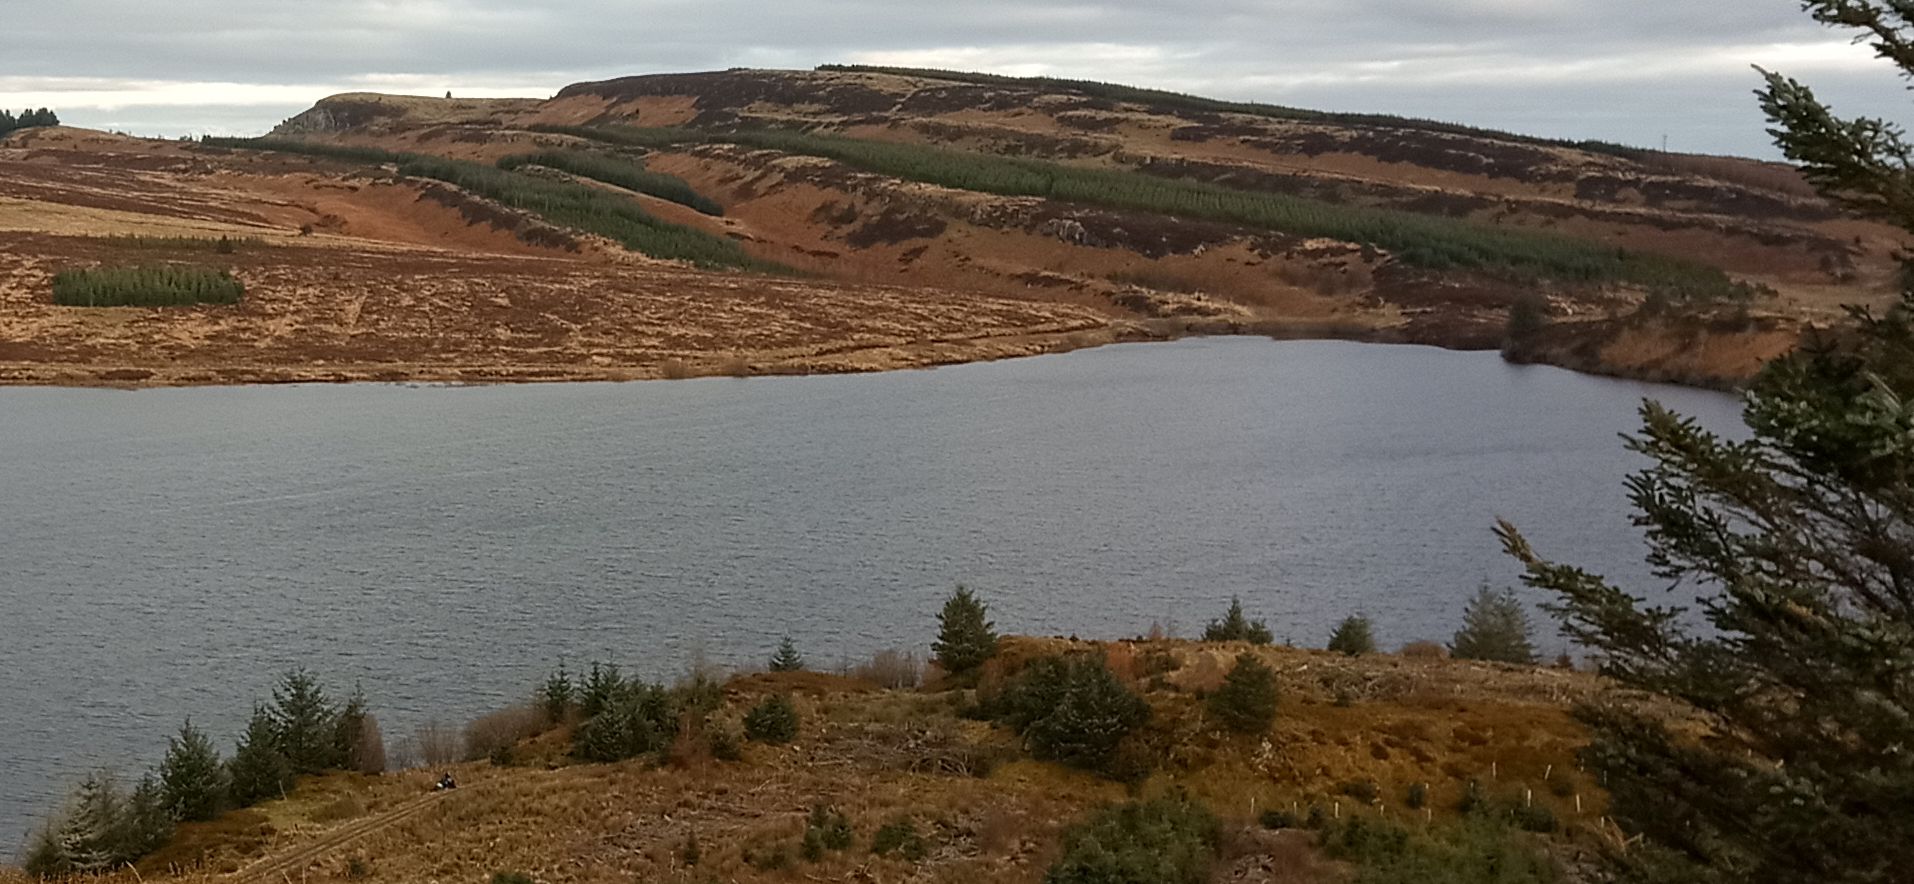 Auchineden Hill across Burncrooks Reservoir